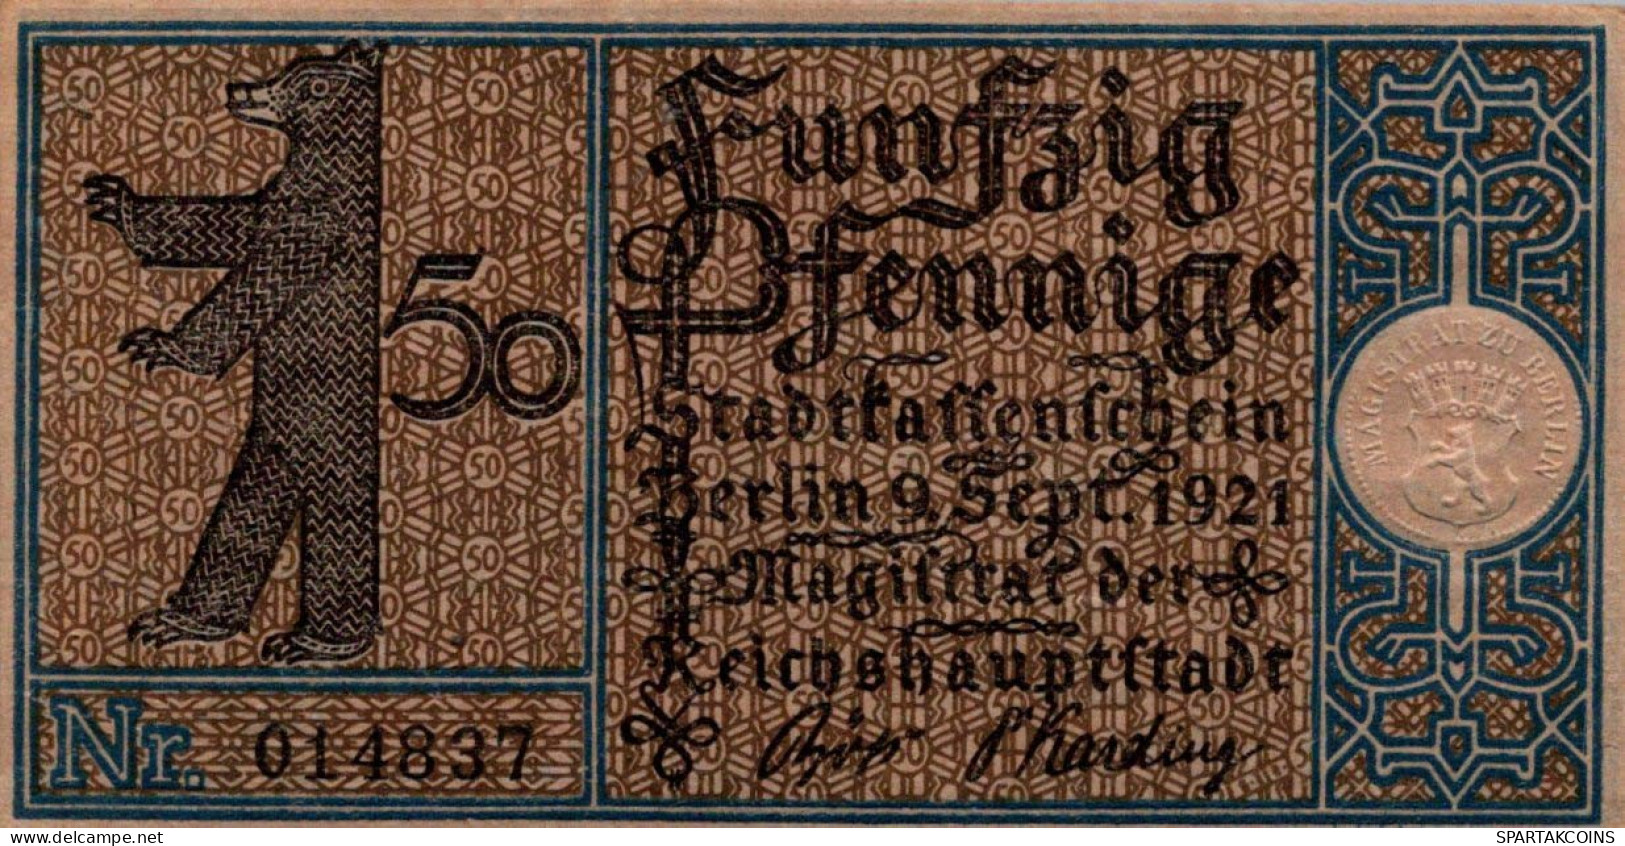 50 PFENNIG 1921 Stadt BERLIN UNC DEUTSCHLAND Notgeld Banknote #PA193 - [11] Lokale Uitgaven